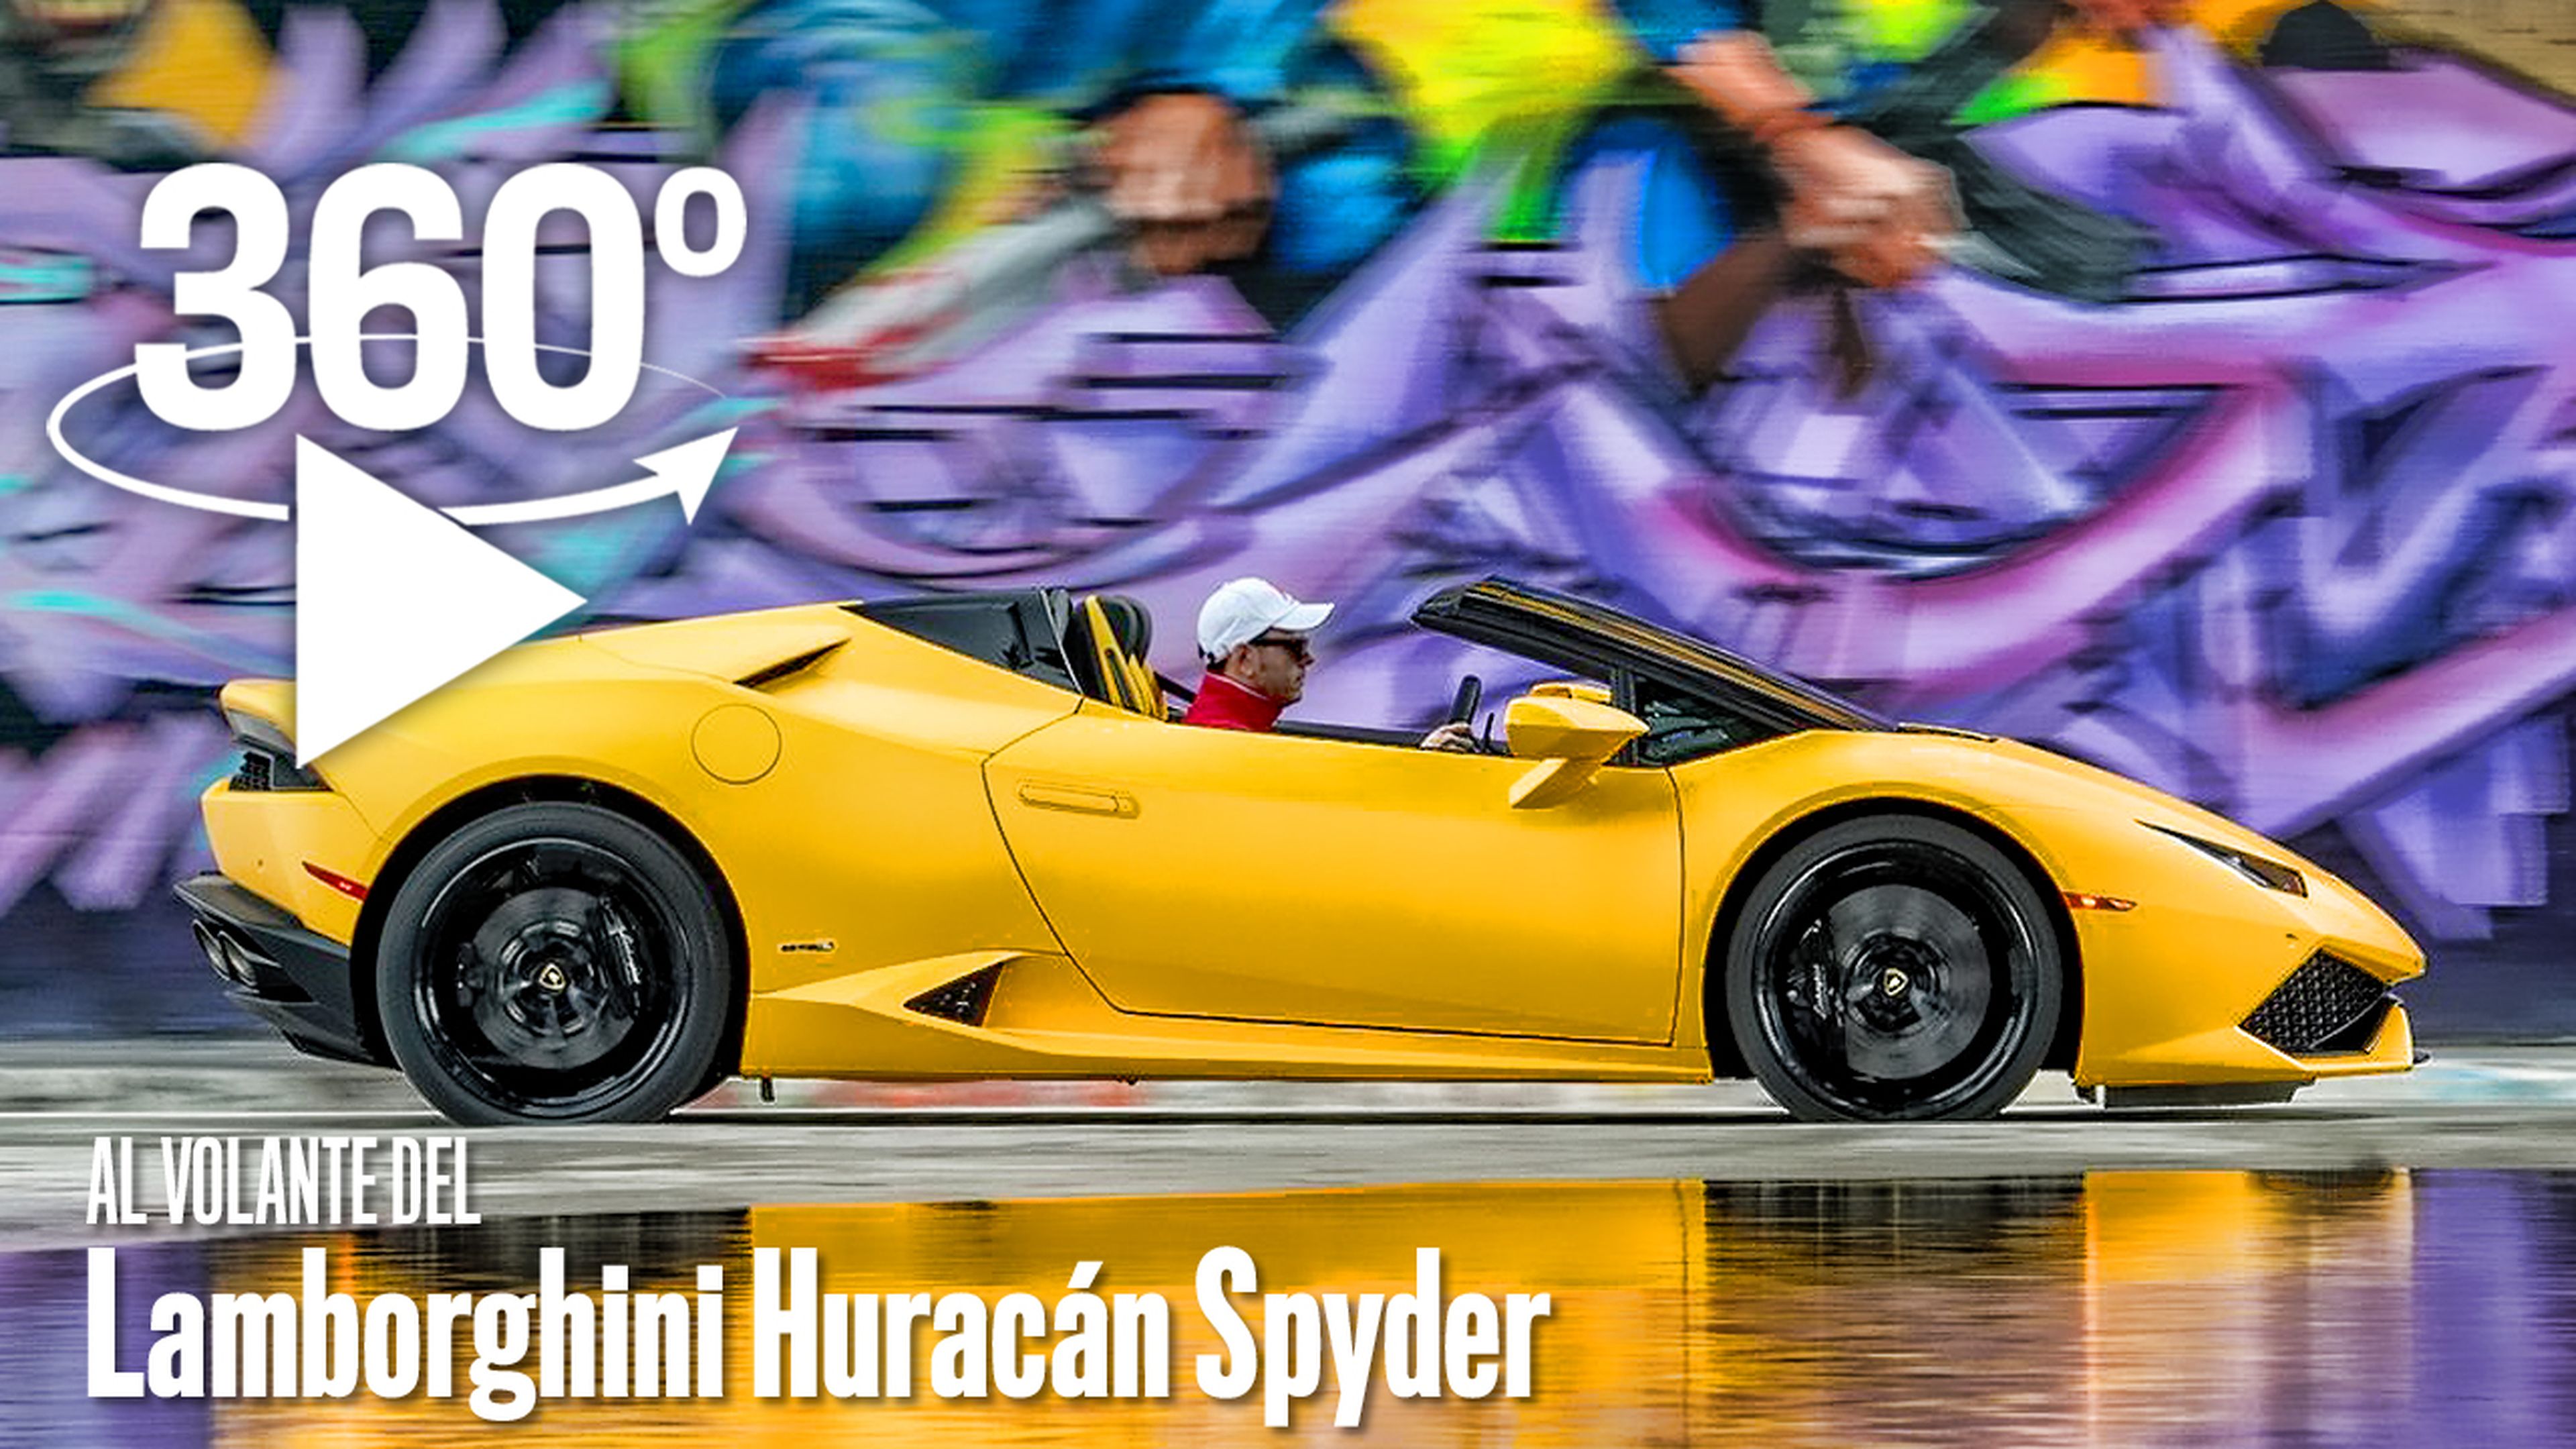 Vídeo 360: Al volante de un Lamborghini Huracán Spyder